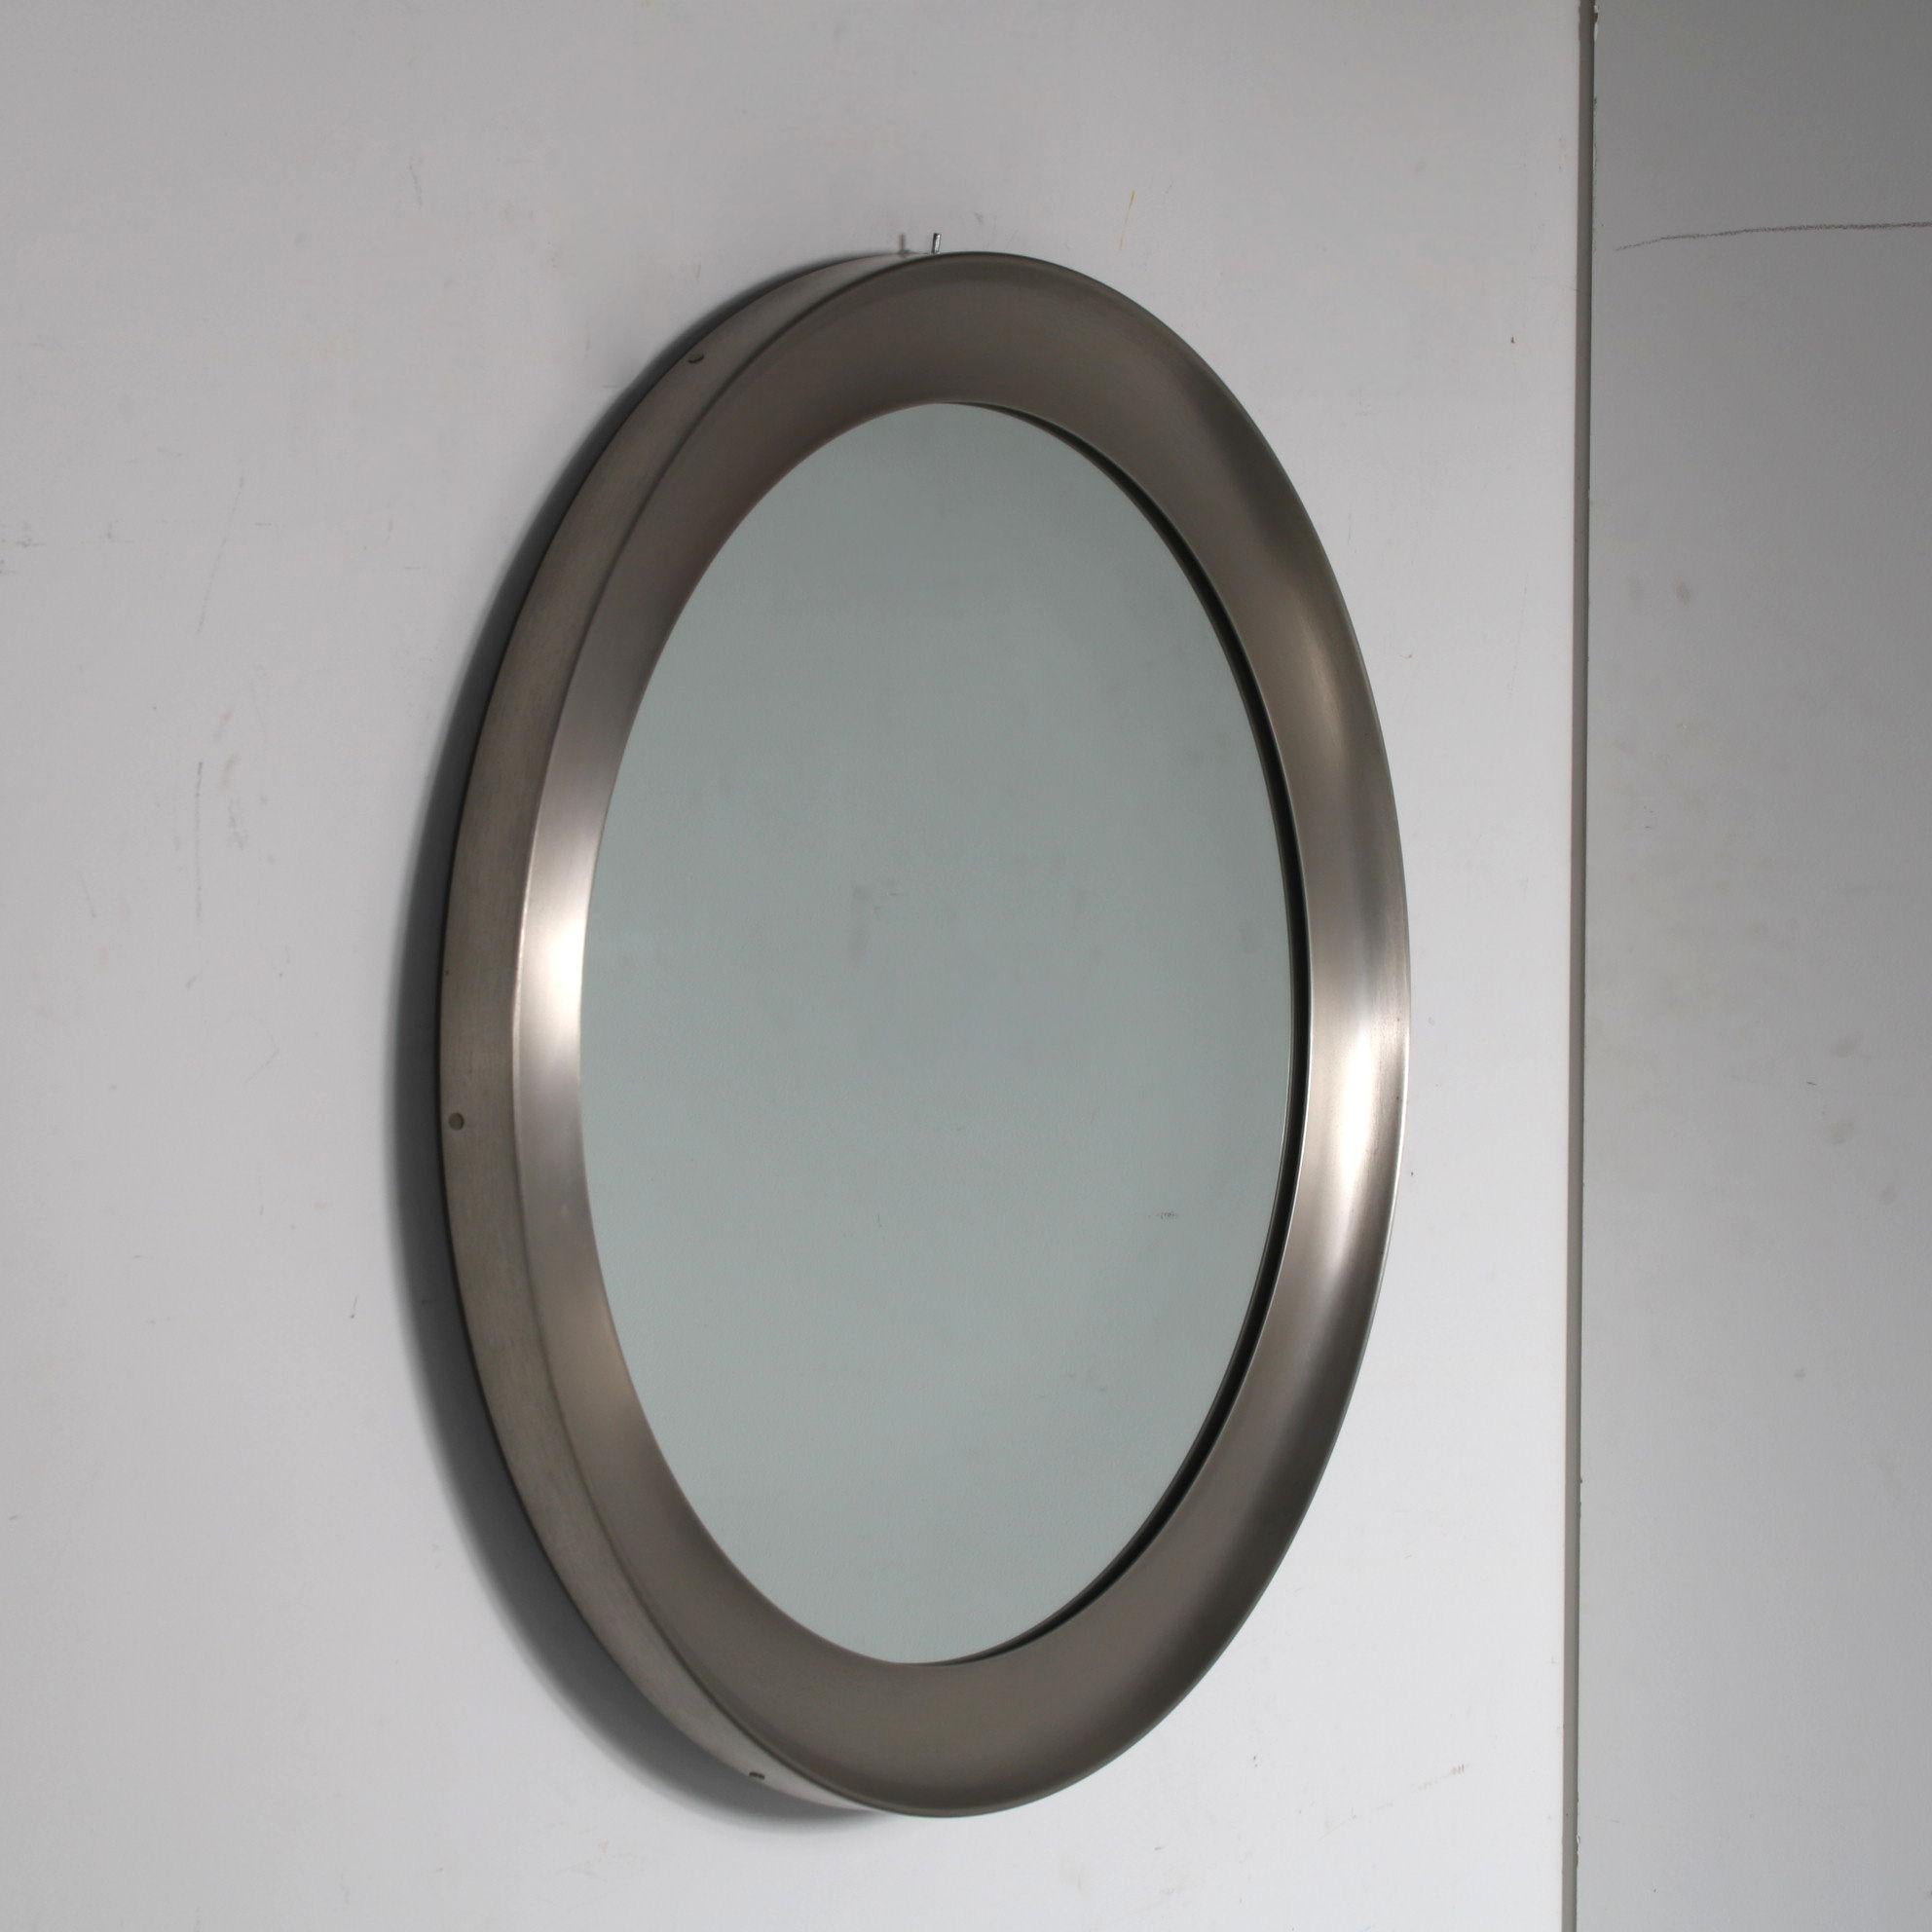 Ein schöner und ikonischer Spiegel, entworfen von Sergio Mazza, hergestellt von Artemide in Italien um 1950.

